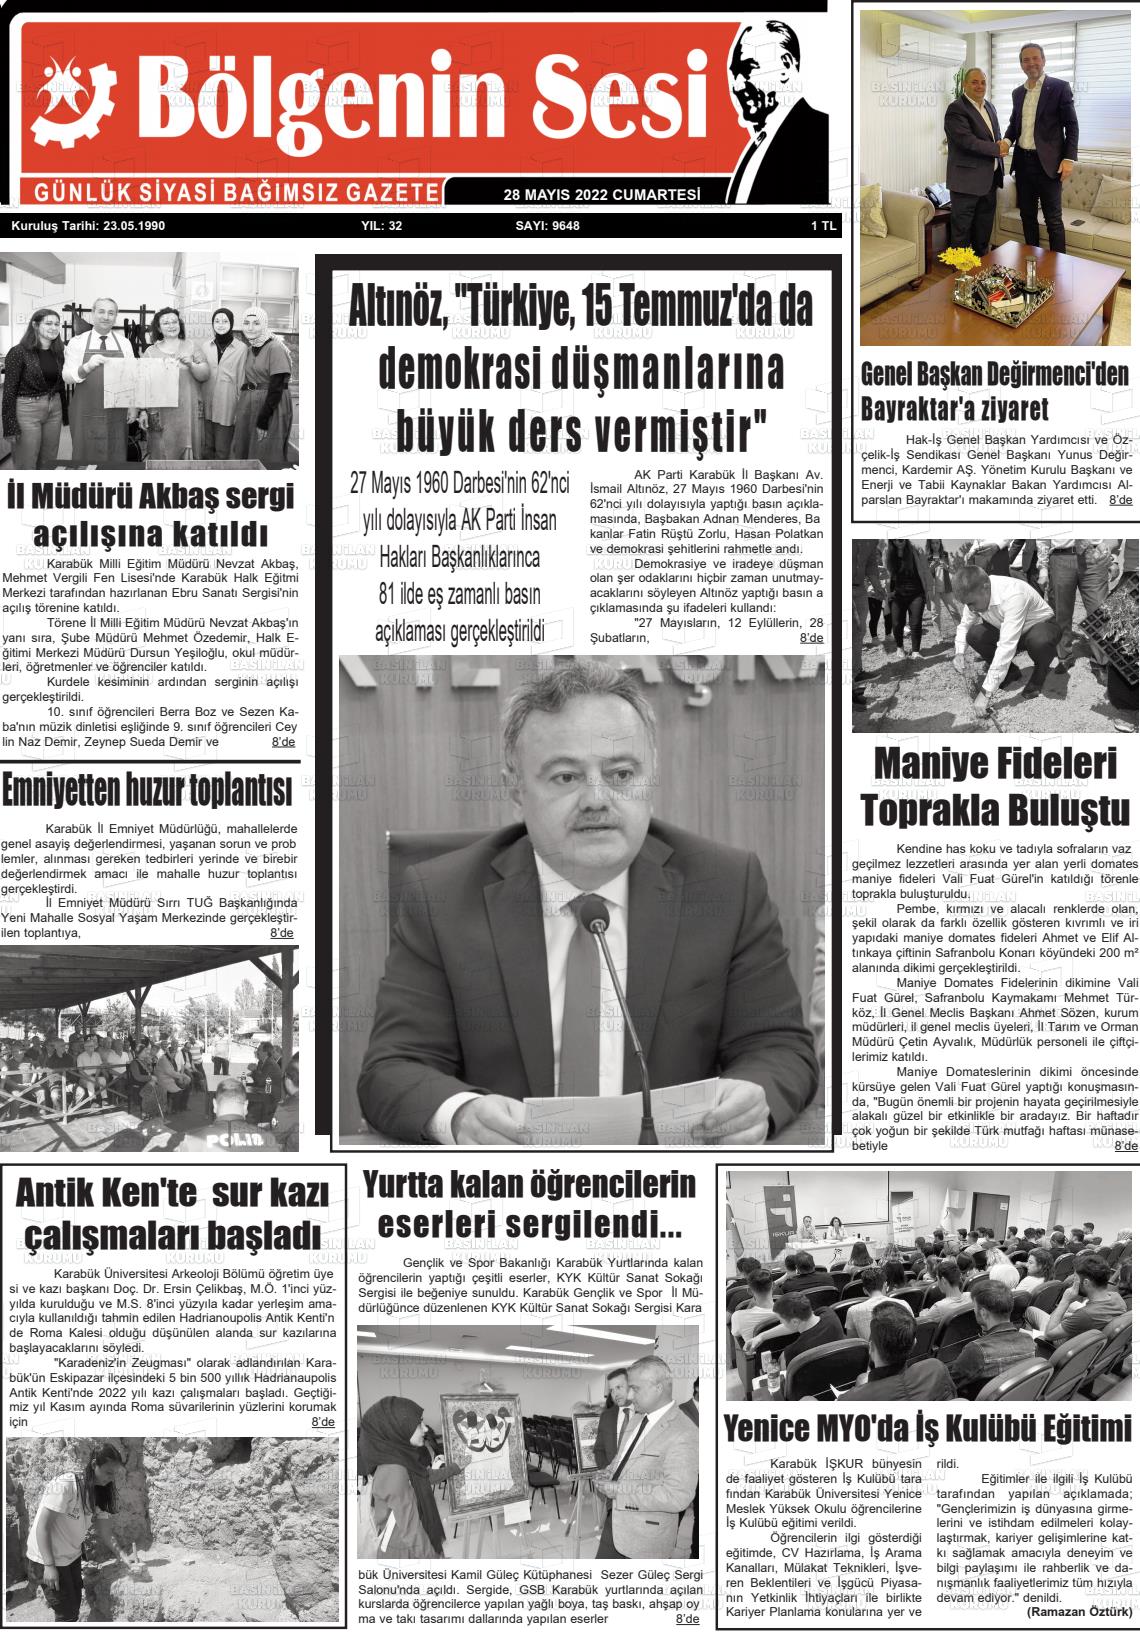 28 Mayıs 2022 Bölgenin Sesi Gazete Manşeti